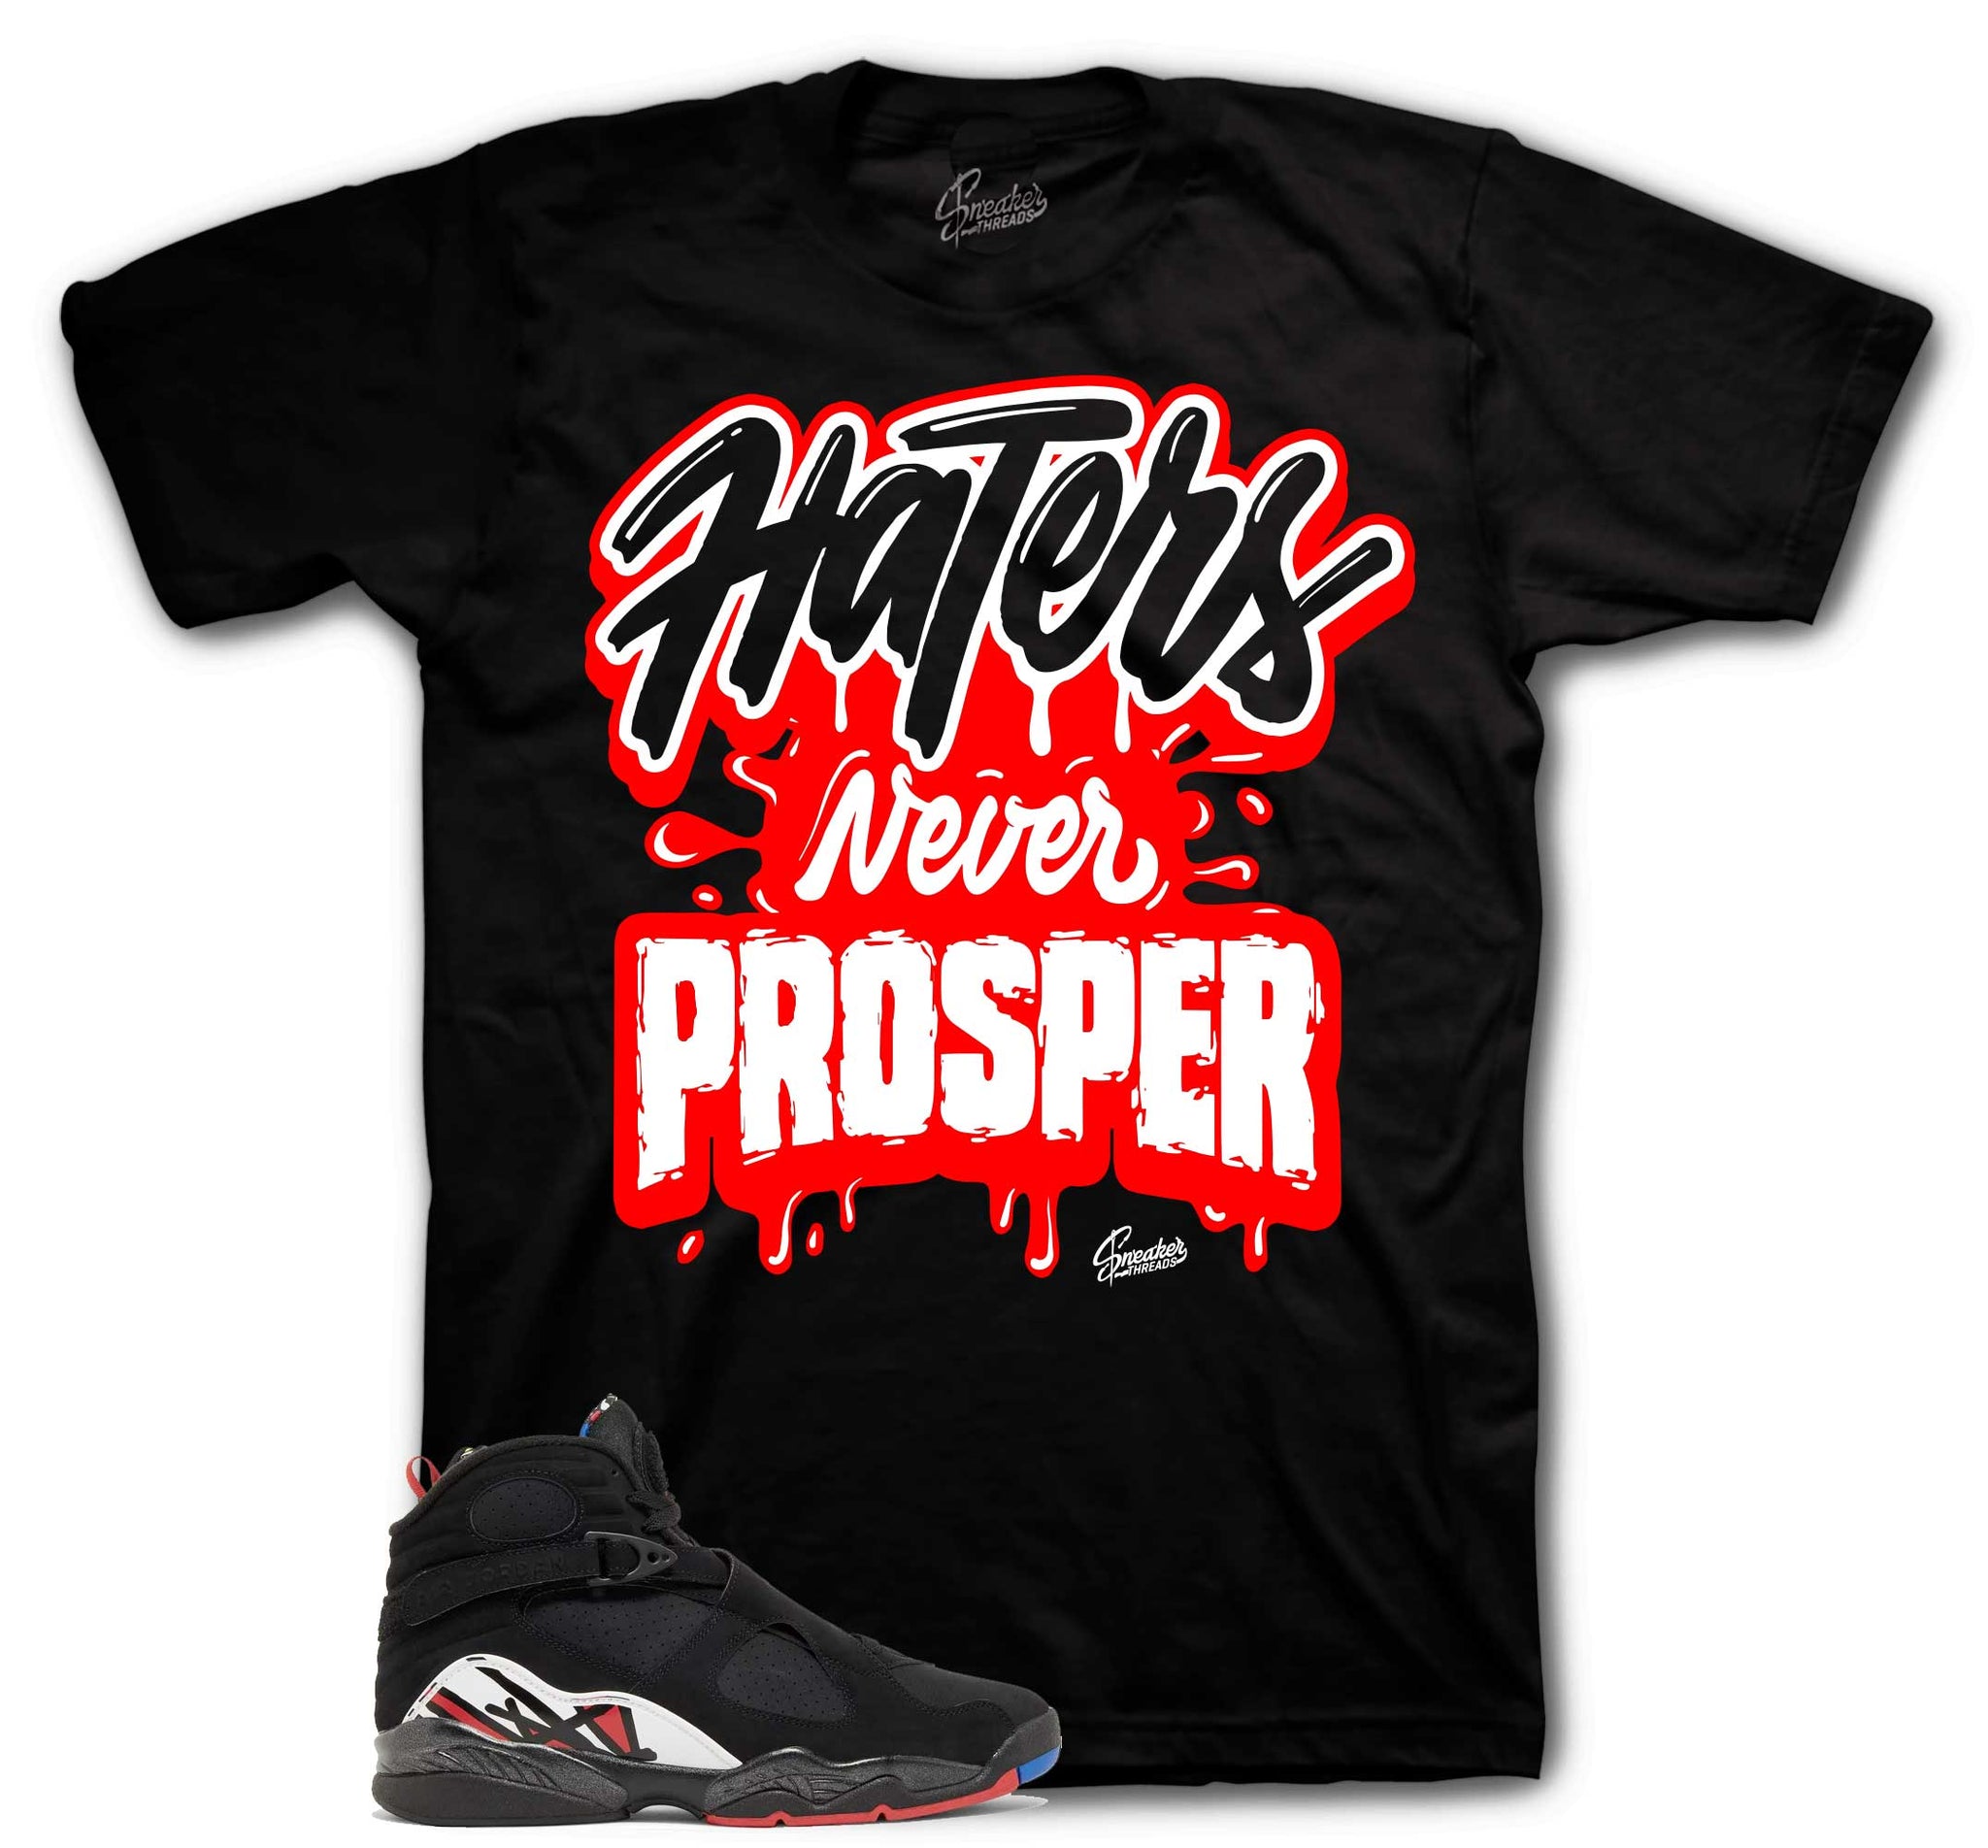 Retro 8 Playoffs Shirt - Haters Never Prosper - Black